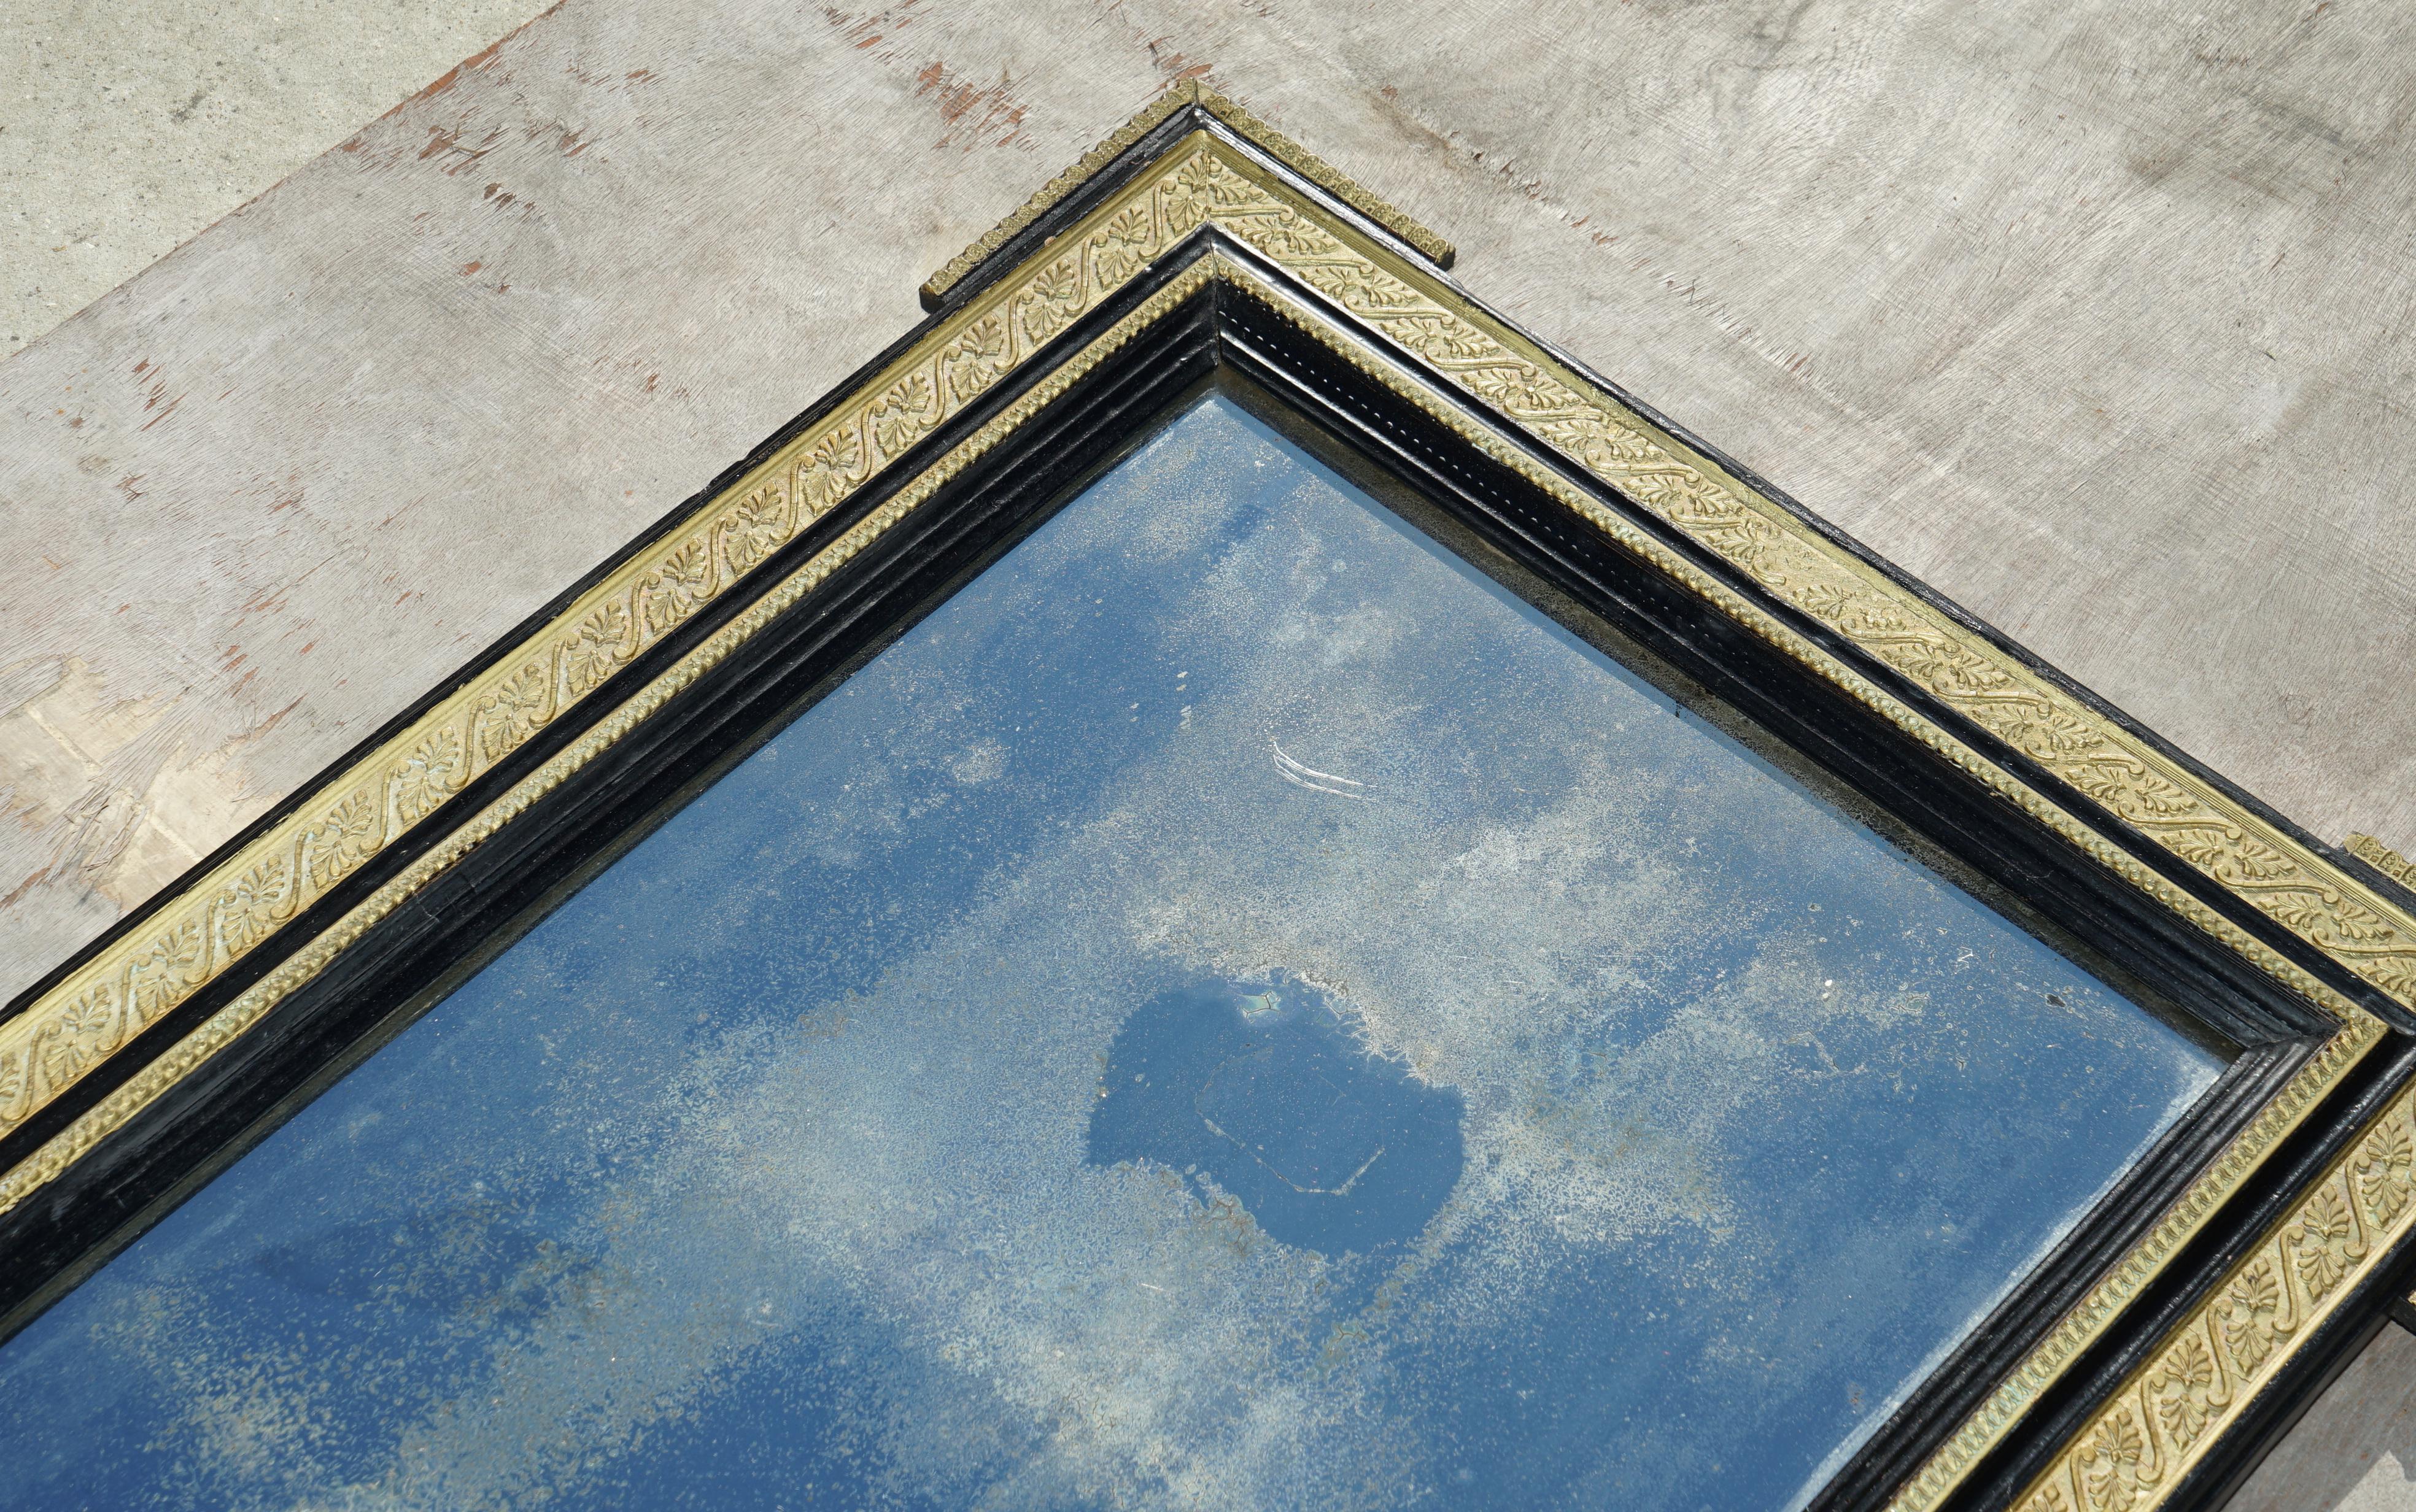 Königshaus Antiquitäten

Royal House Antiques freut sich, diesen atemberaubenden italienischen Spiegel aus Glas mit vergoldetem und ebonisiertem Rahmen aus der Zeit um 1840 zum Verkauf anzubieten

Bitte beachten Sie die Liefergebühr aufgeführt ist